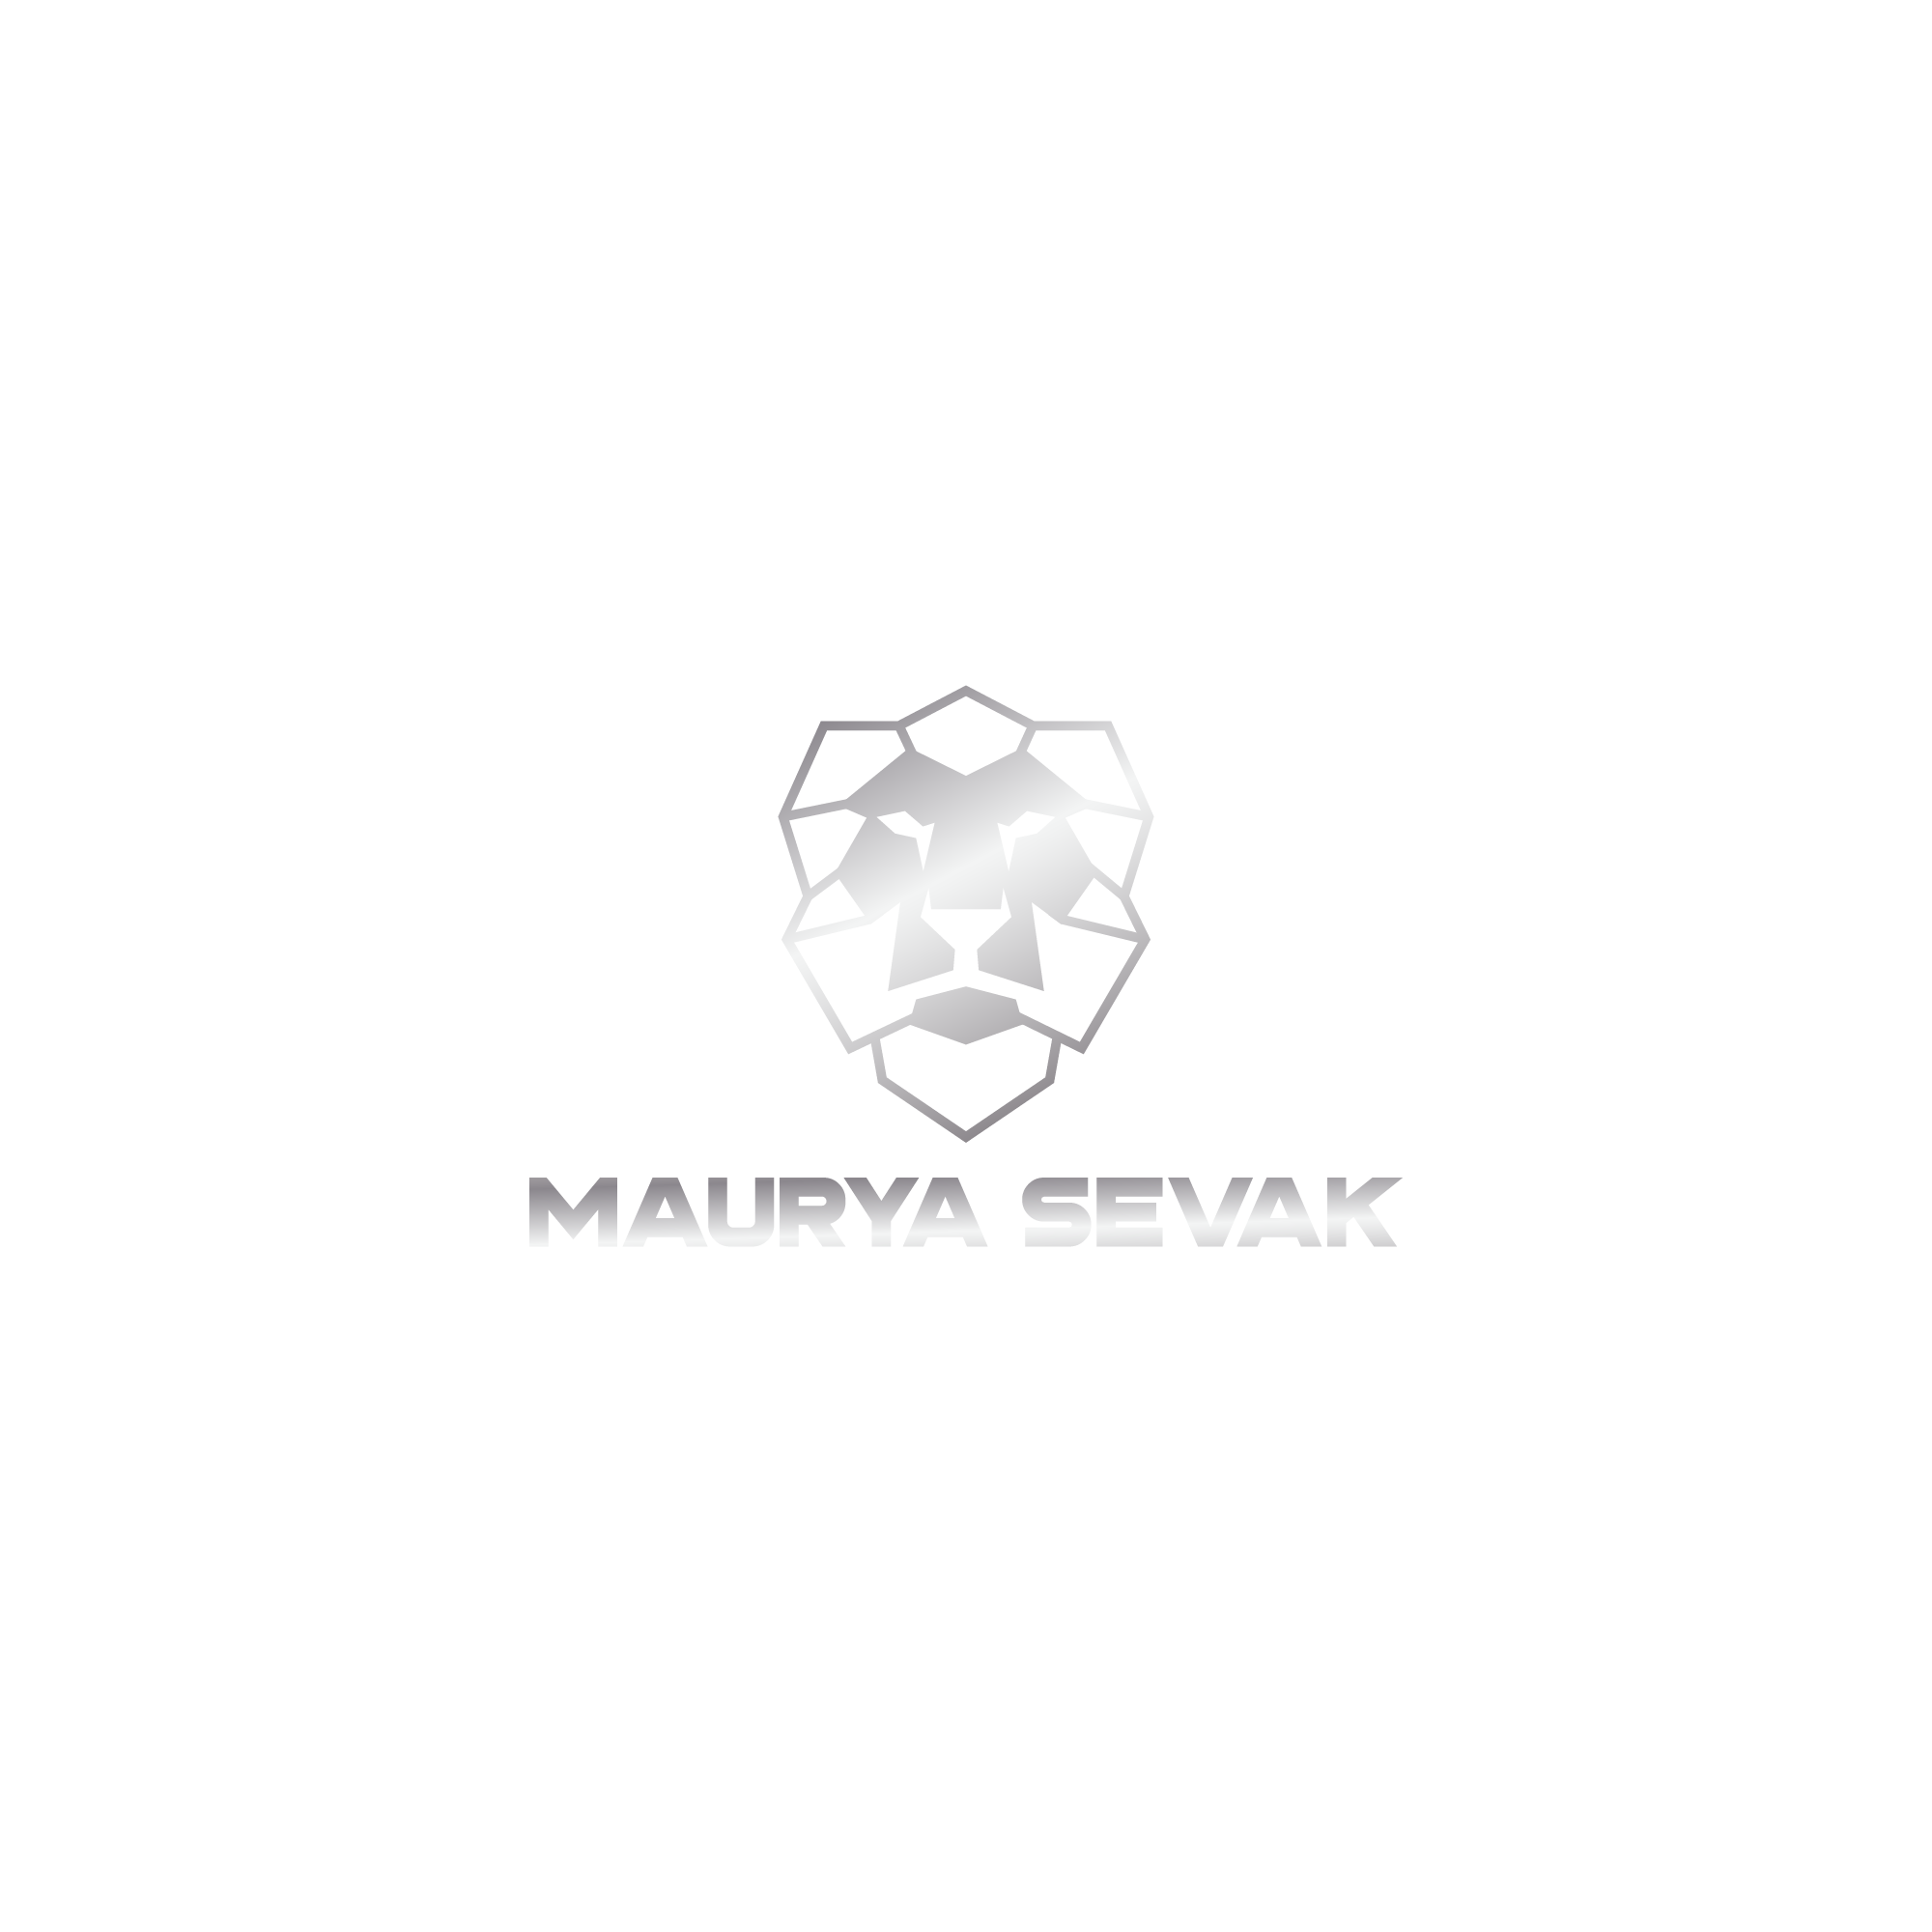 Maurya Sevak -logo